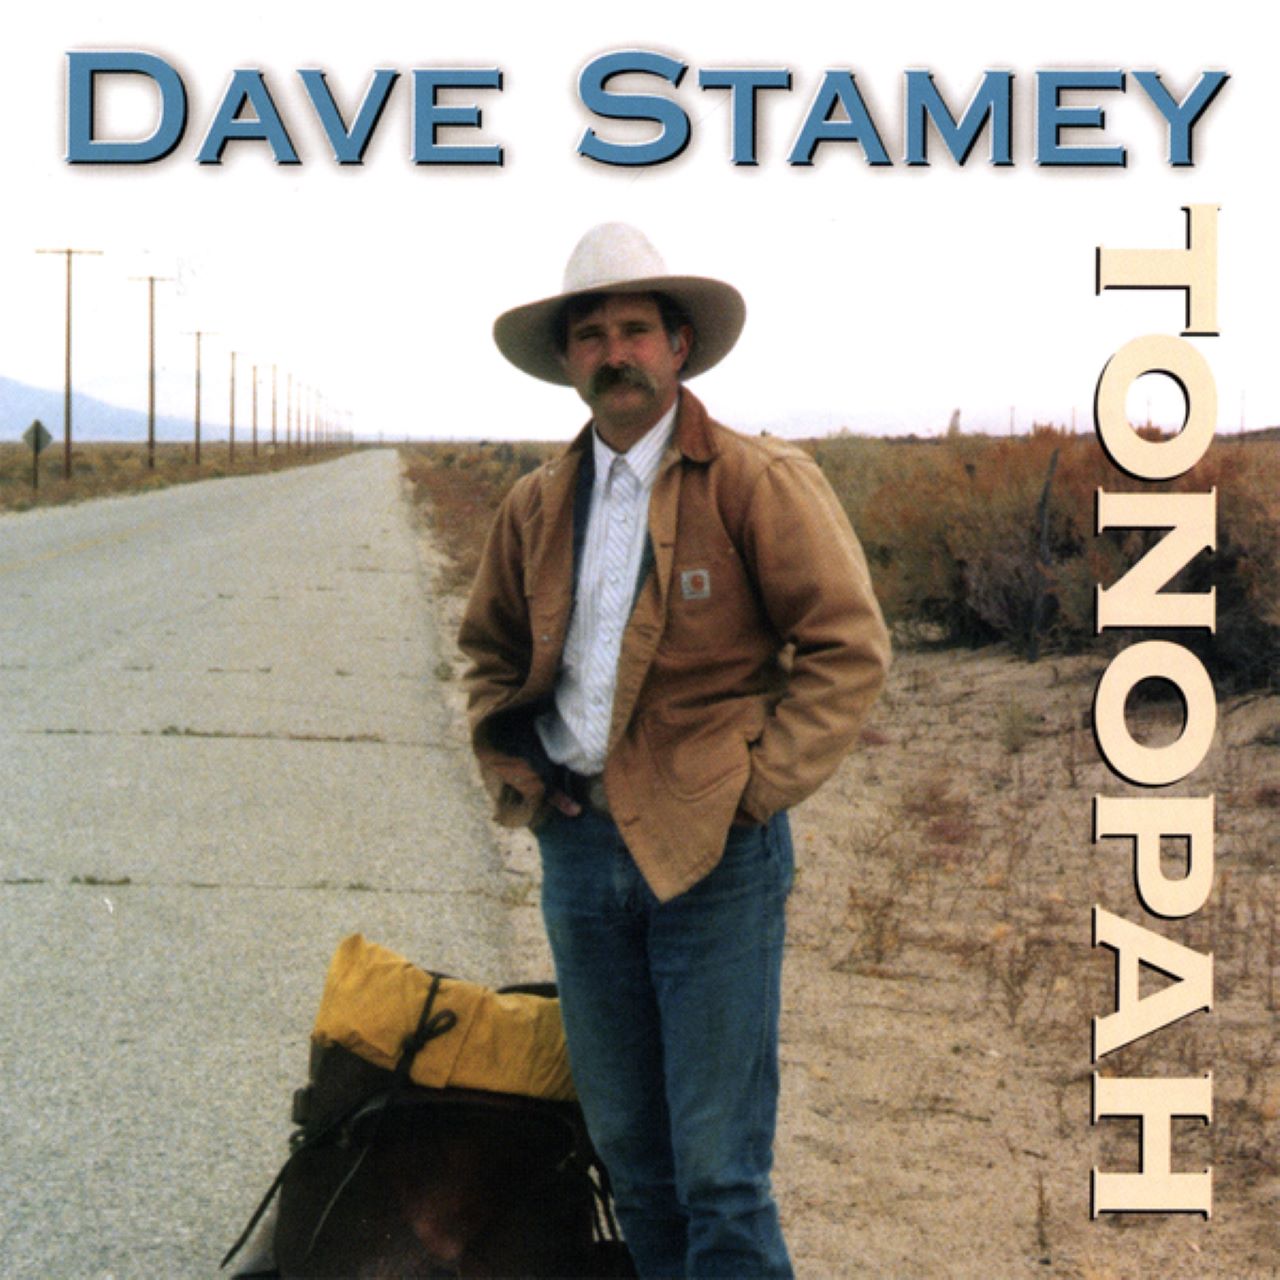 Dave Stamey – “Tonopah” cover album